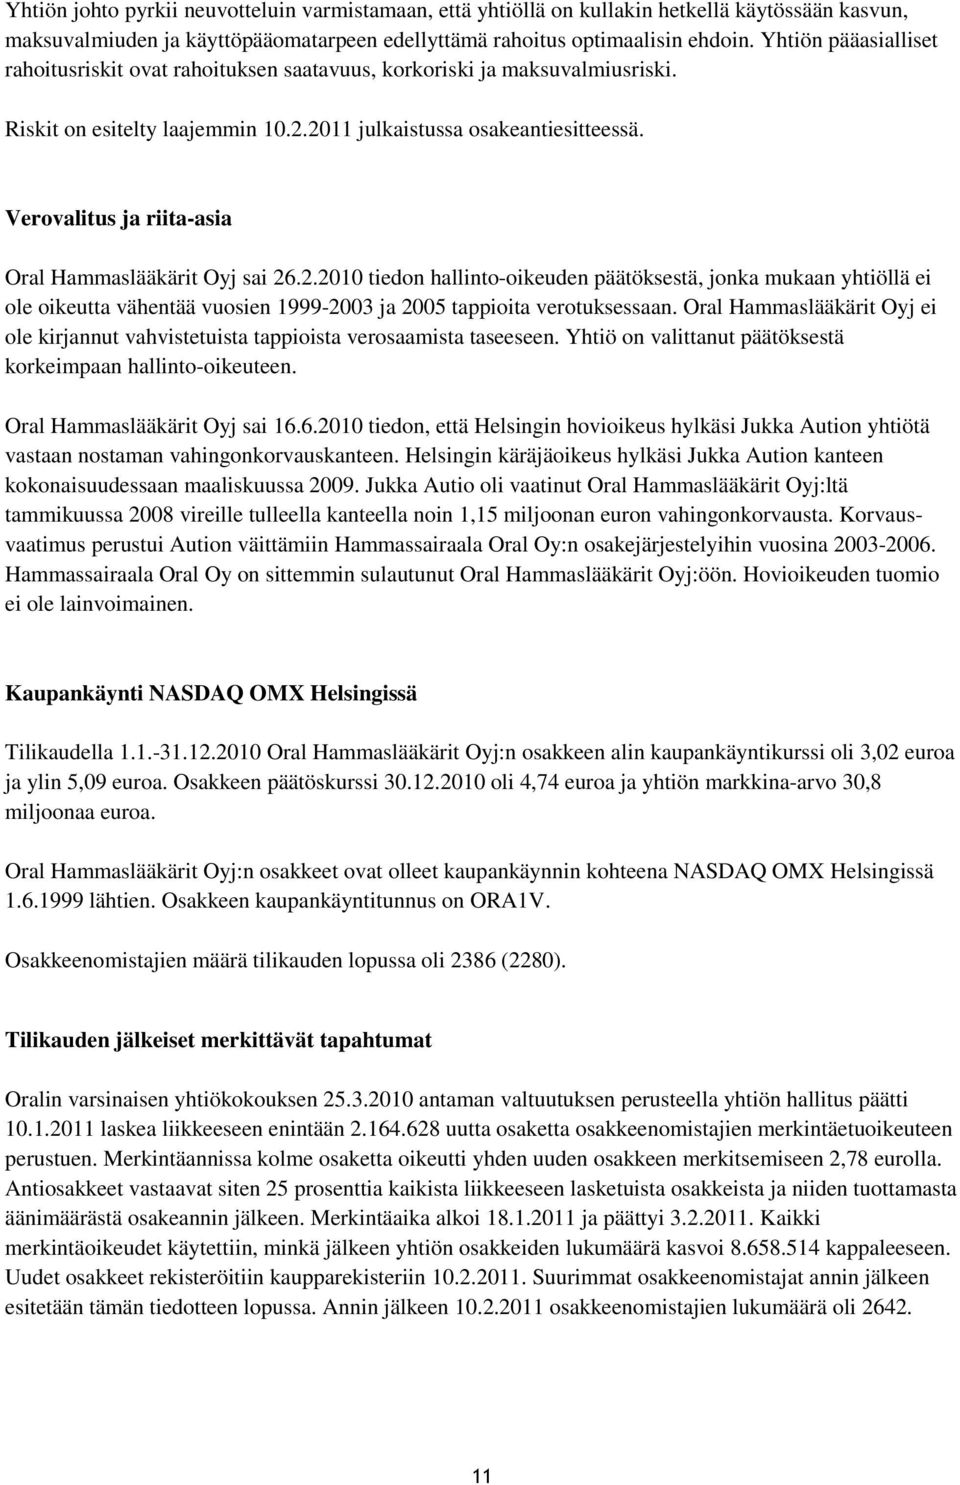 Verovalitus ja riita-asia Oral Hammaslääkärit Oyj sai 26.2.2010 tiedon hallinto-oikeuden päätöksestä, jonka mukaan yhtiöllä ei ole oikeutta vähentää vuosien 1999-2003 ja 2005 tappioita verotuksessaan.